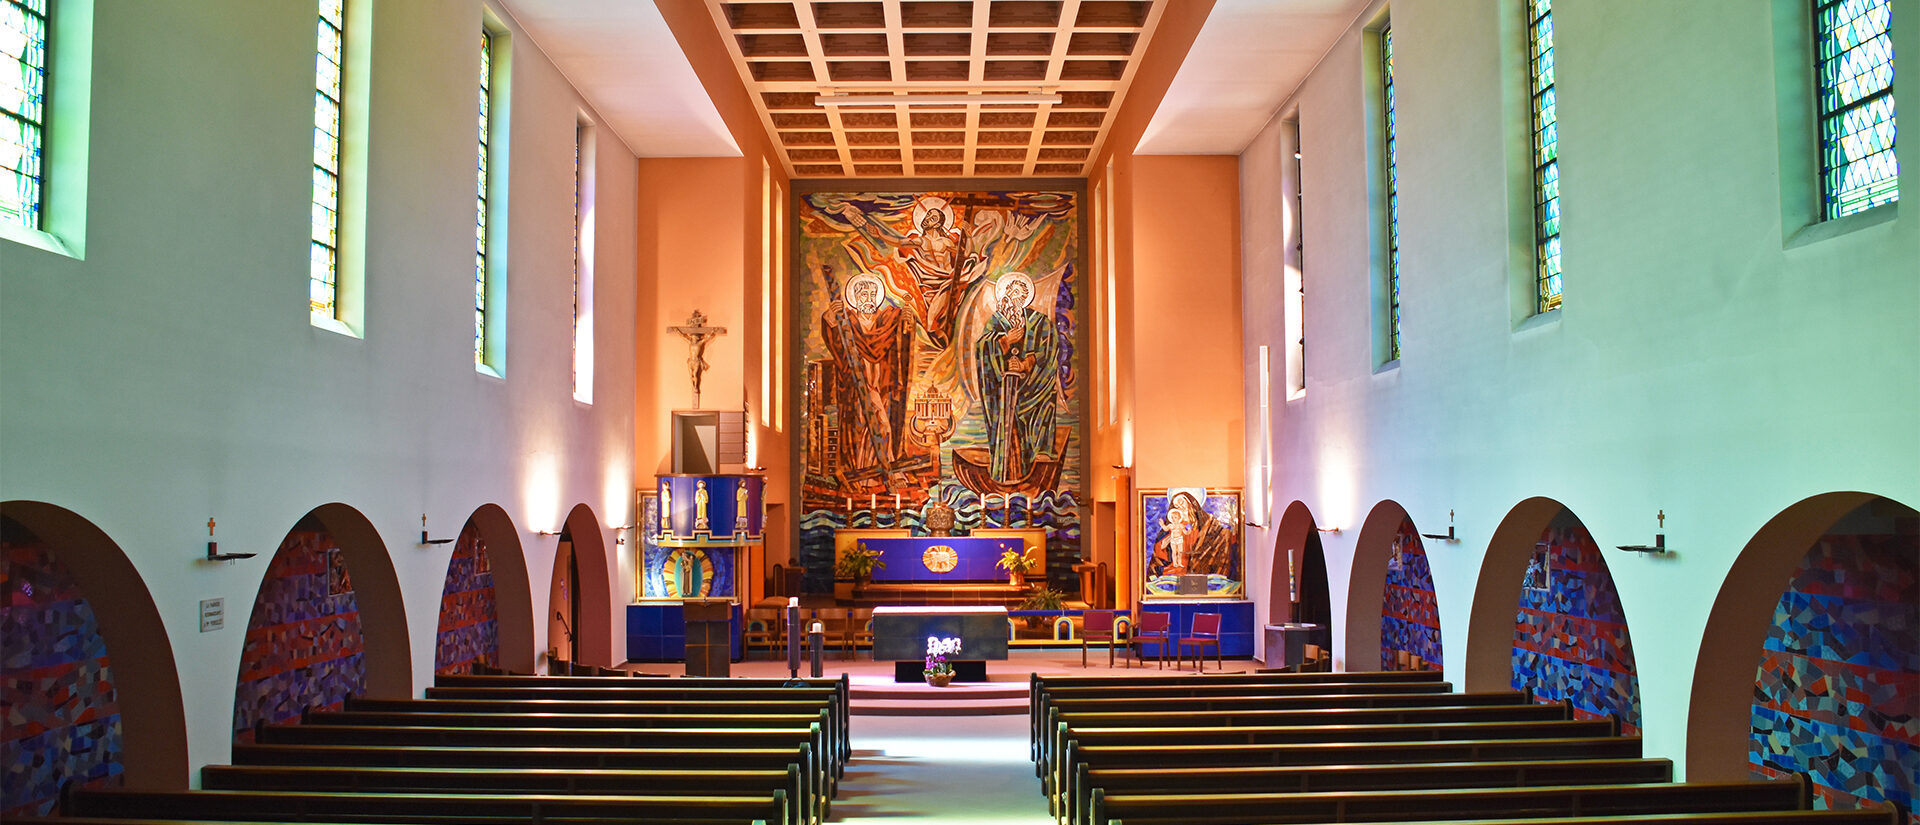 La lumineuse mosaïque de l'église de Fontenais (JU) est l'oeuvre d'Albert Gaeng | © Grégory Roth